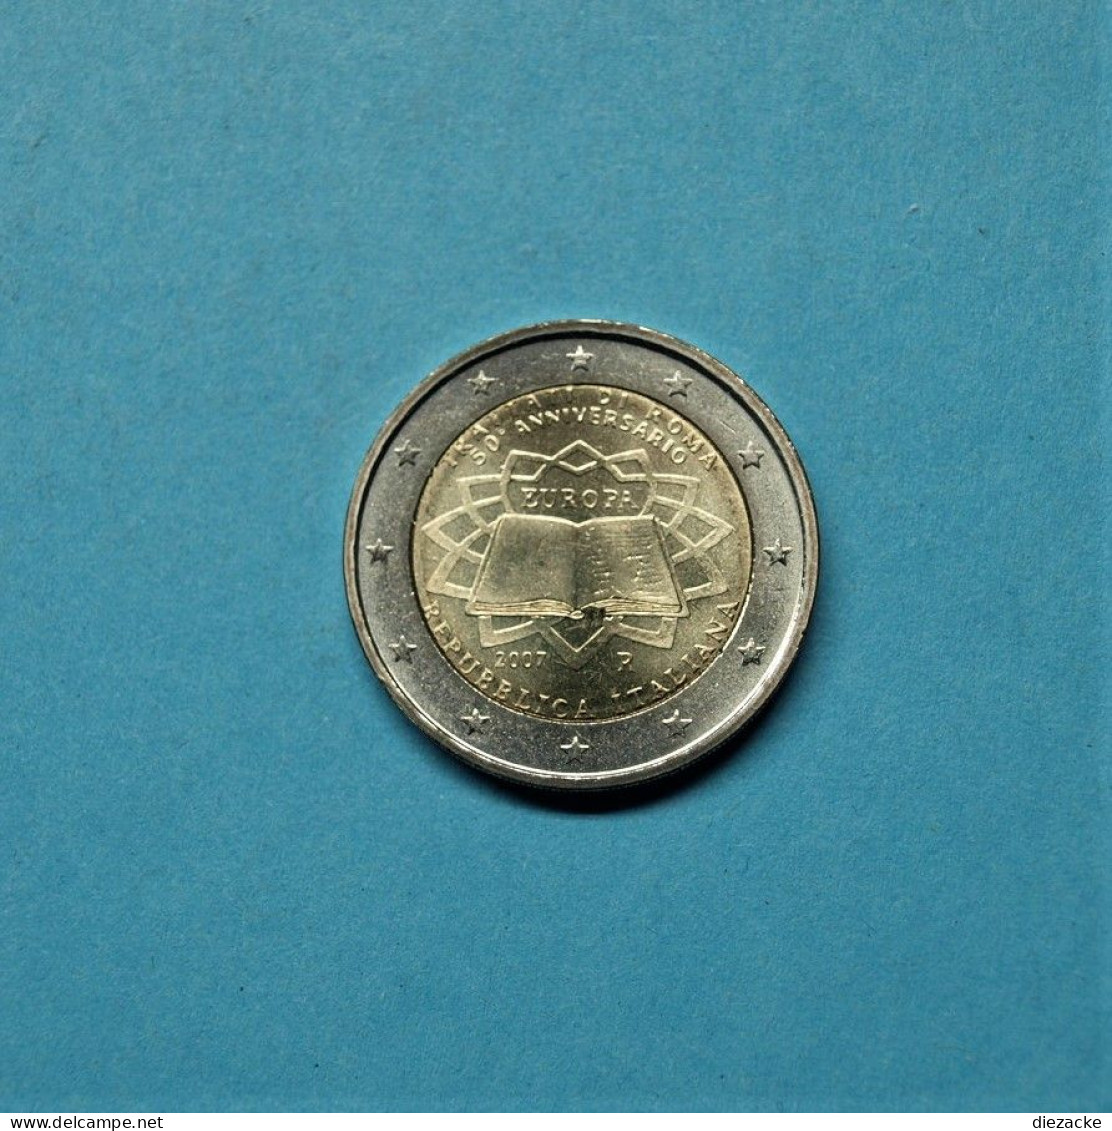 Italien 2007 2 Euro Römische Verträge Unzirkuliert (M4961 - Herdenking